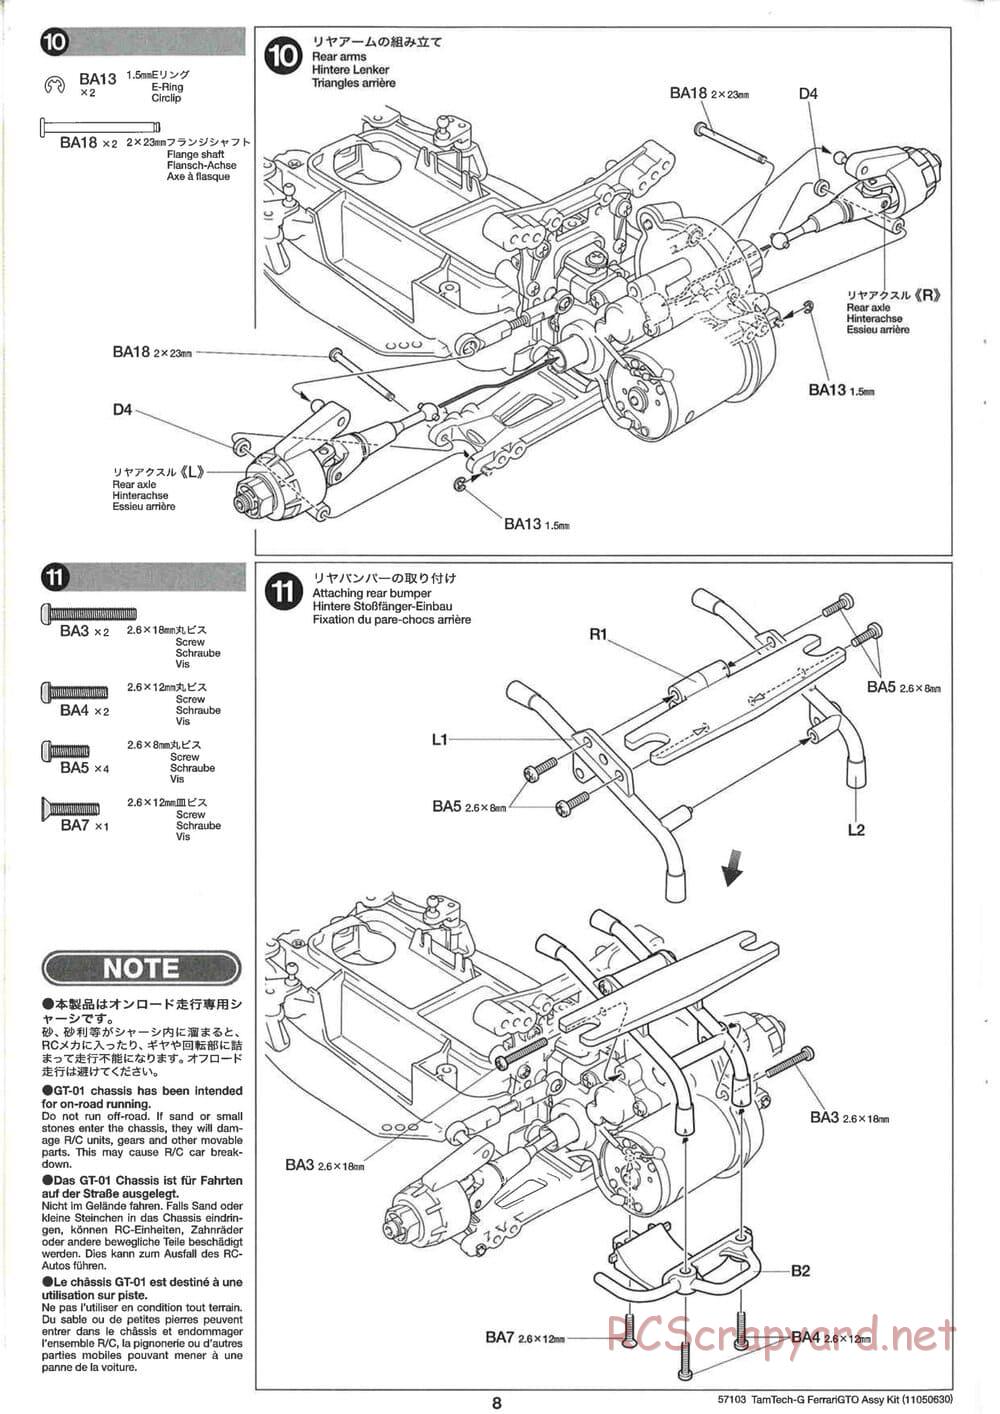 Tamiya - Ferrari 288 GTO - GT-01 Chassis - Manual - Page 8